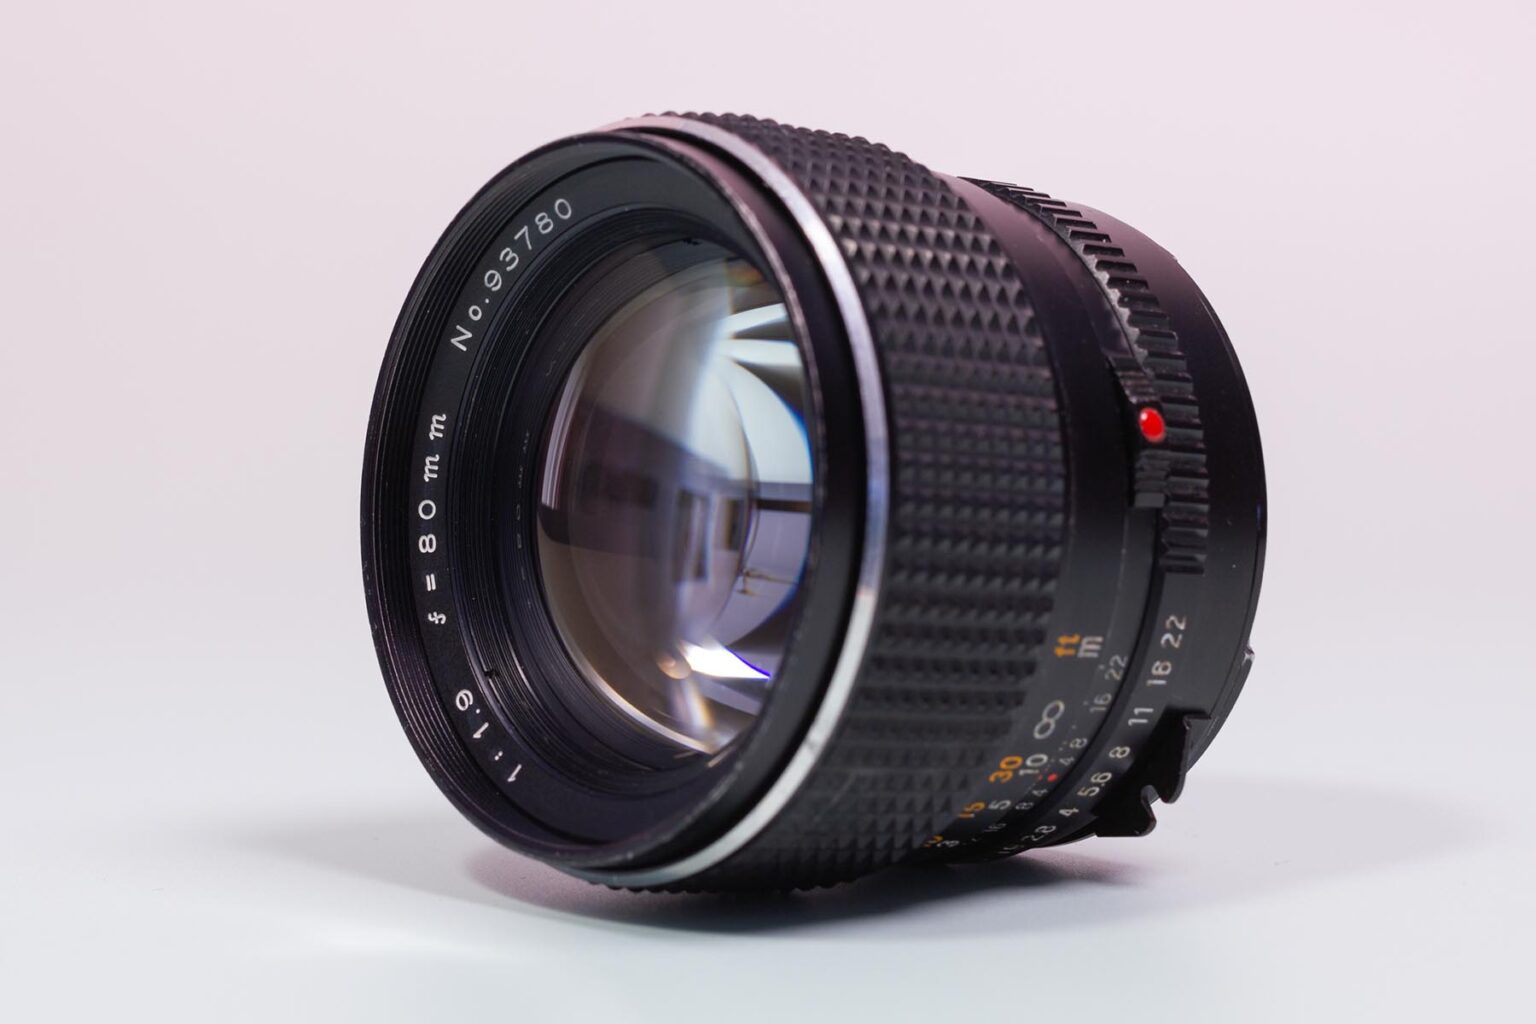 Mamiya 645 Sekor C 80mm f1.9 lens – Camera Revival